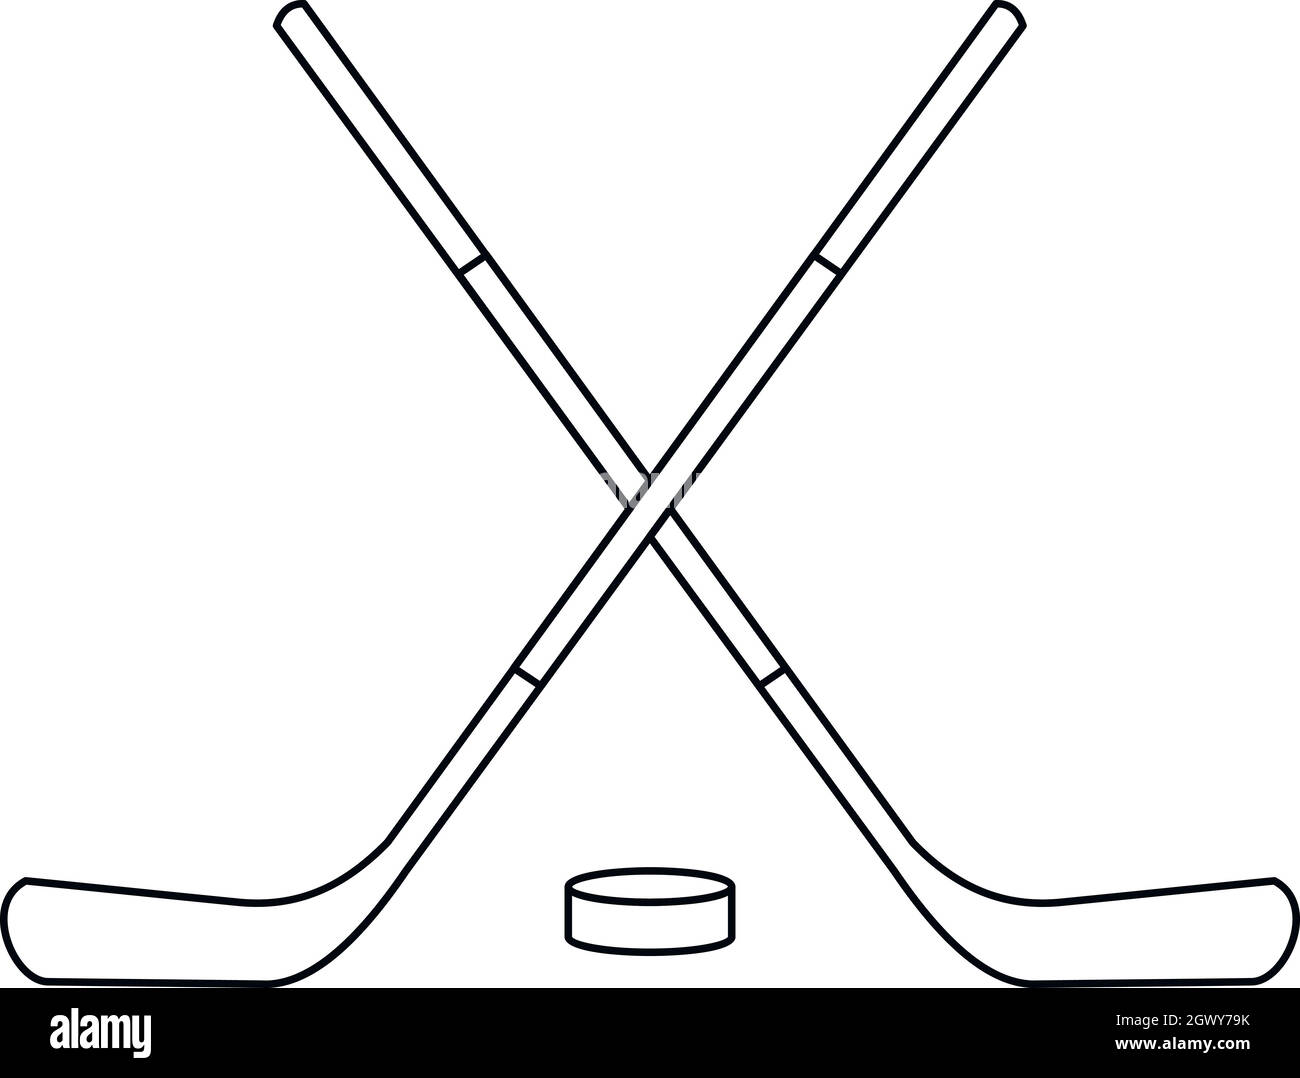 Hockeyschläger und Puck Symbol, outline Style Stock Vektor